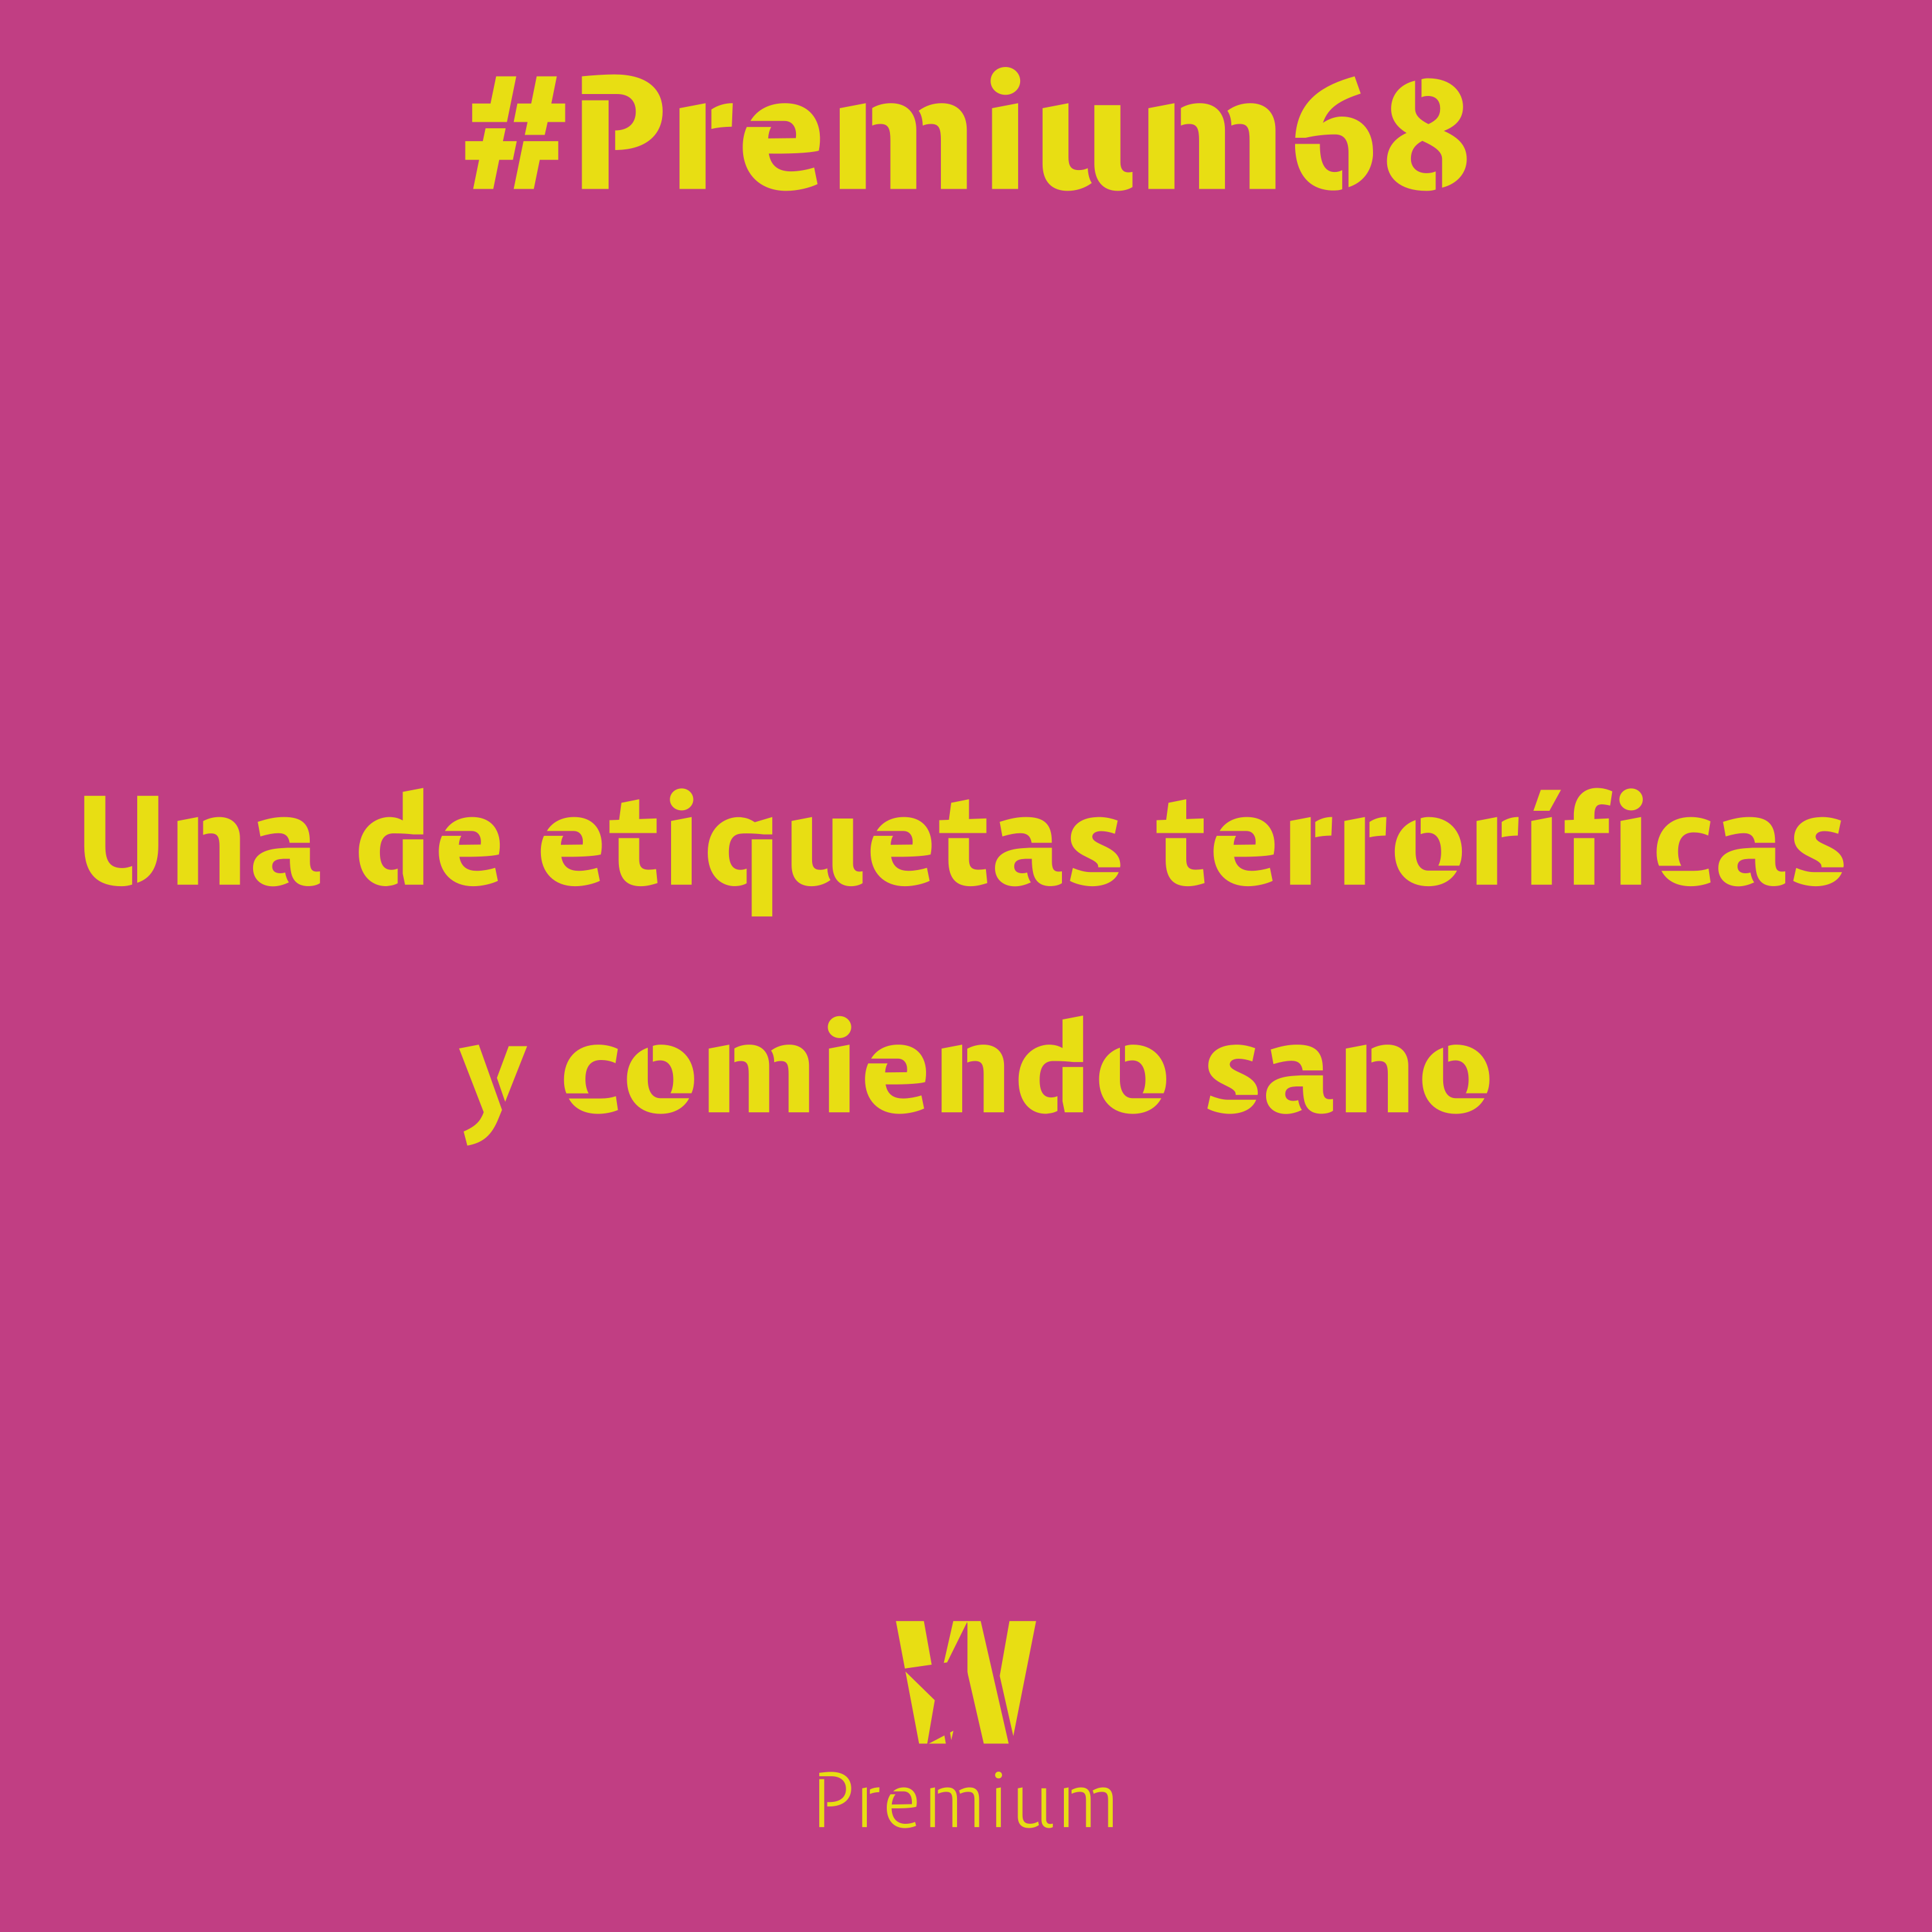 #Premium68 - Una de etiquetas terroríficas y comiendo sano